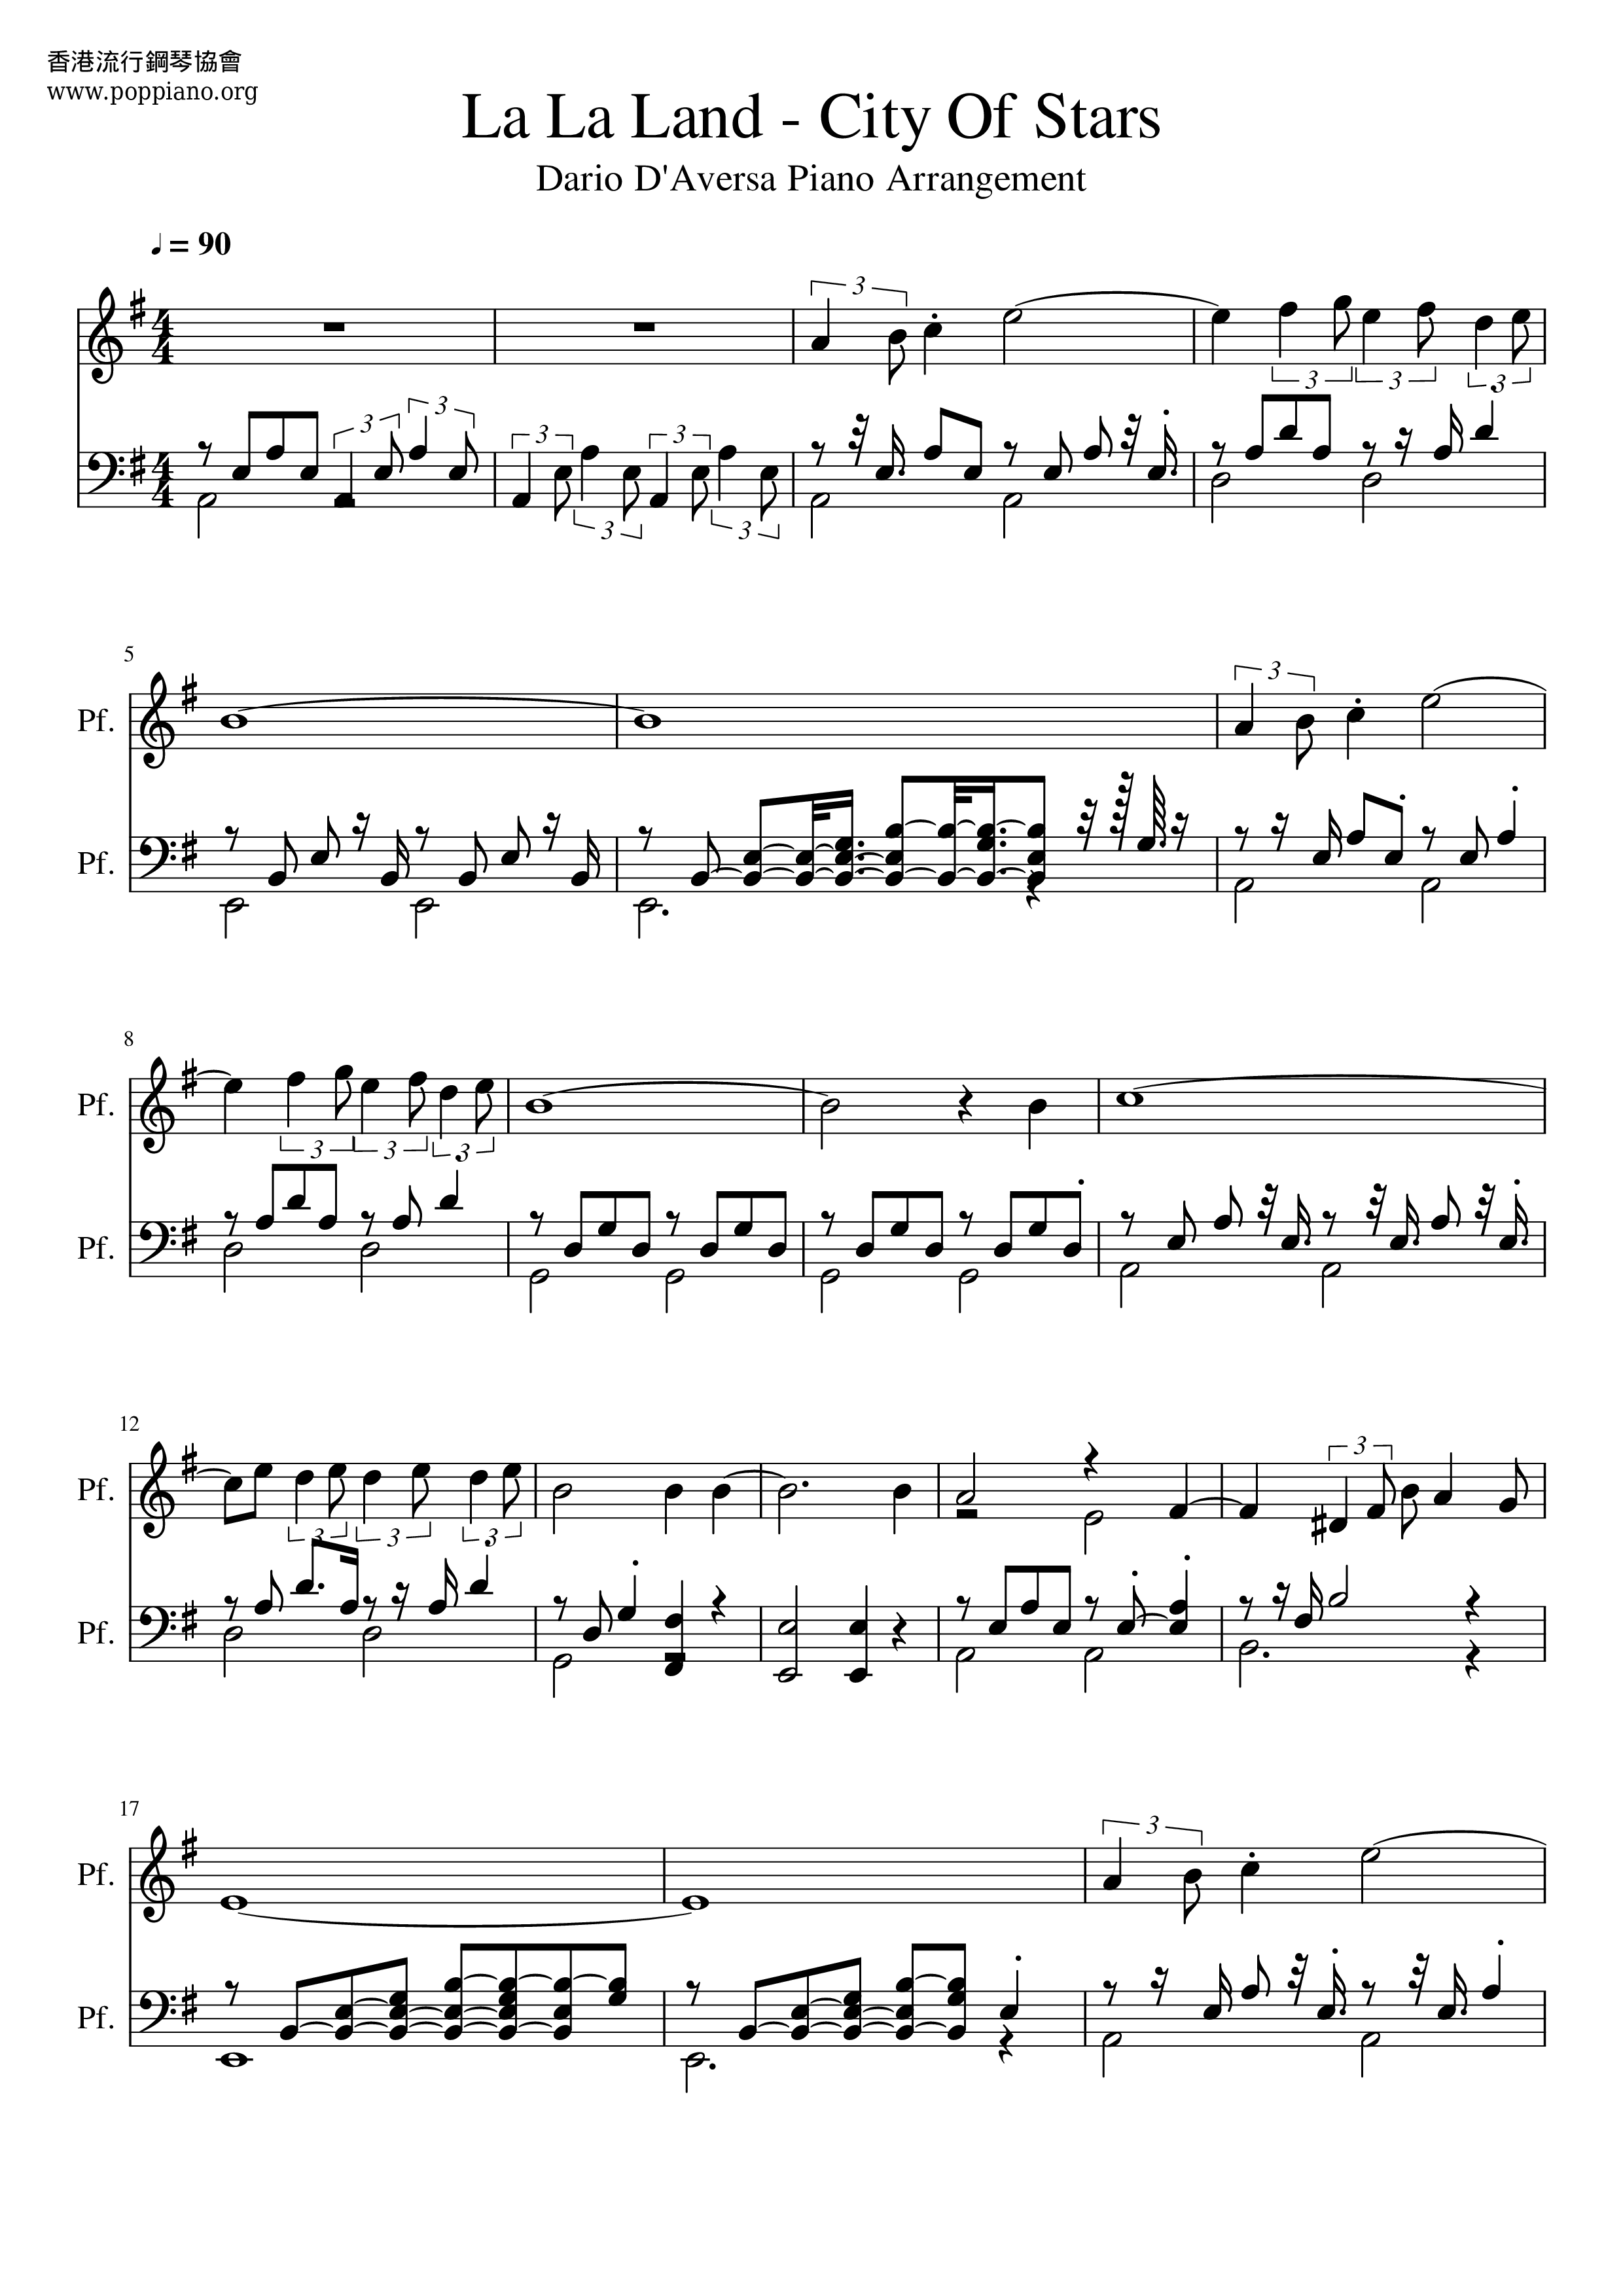 City Of Stars (Ost La La Land) for piano. Sheet music and midi files for  piano.